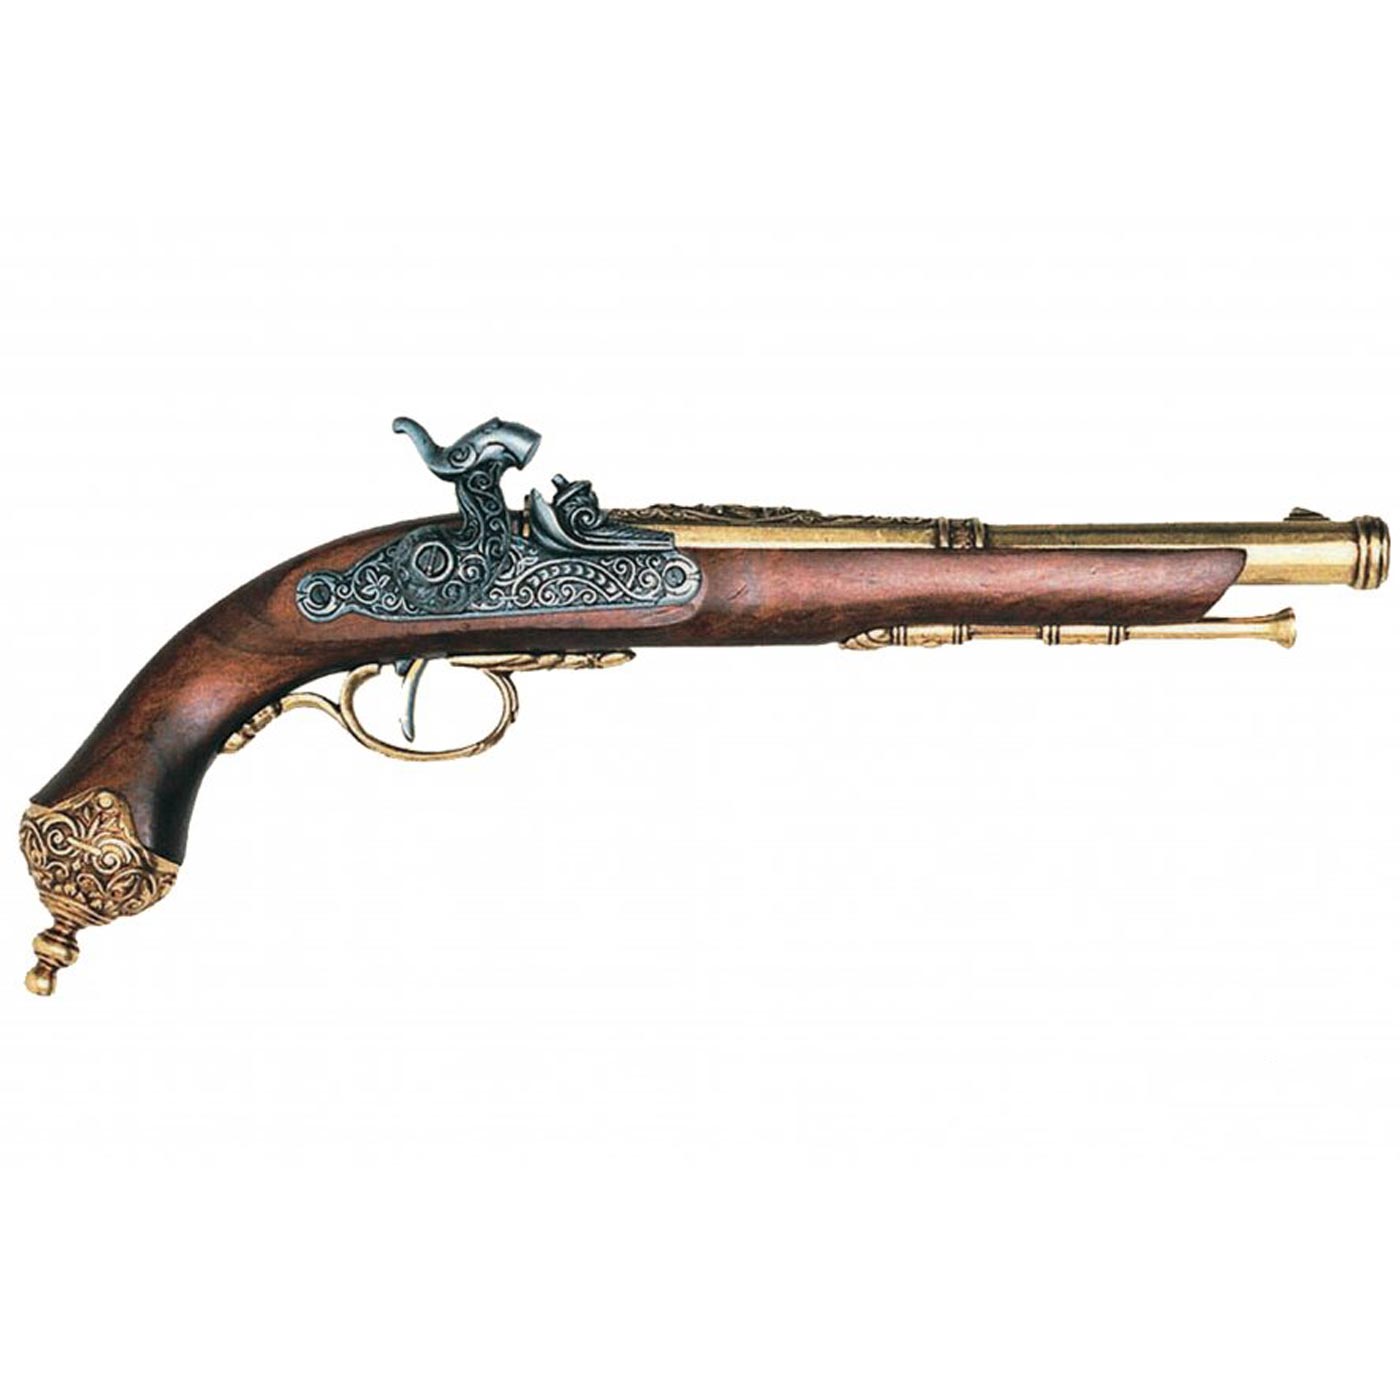 Pistola de percusion Italiana brescia, 1825. Ref. 1013L. DENIX